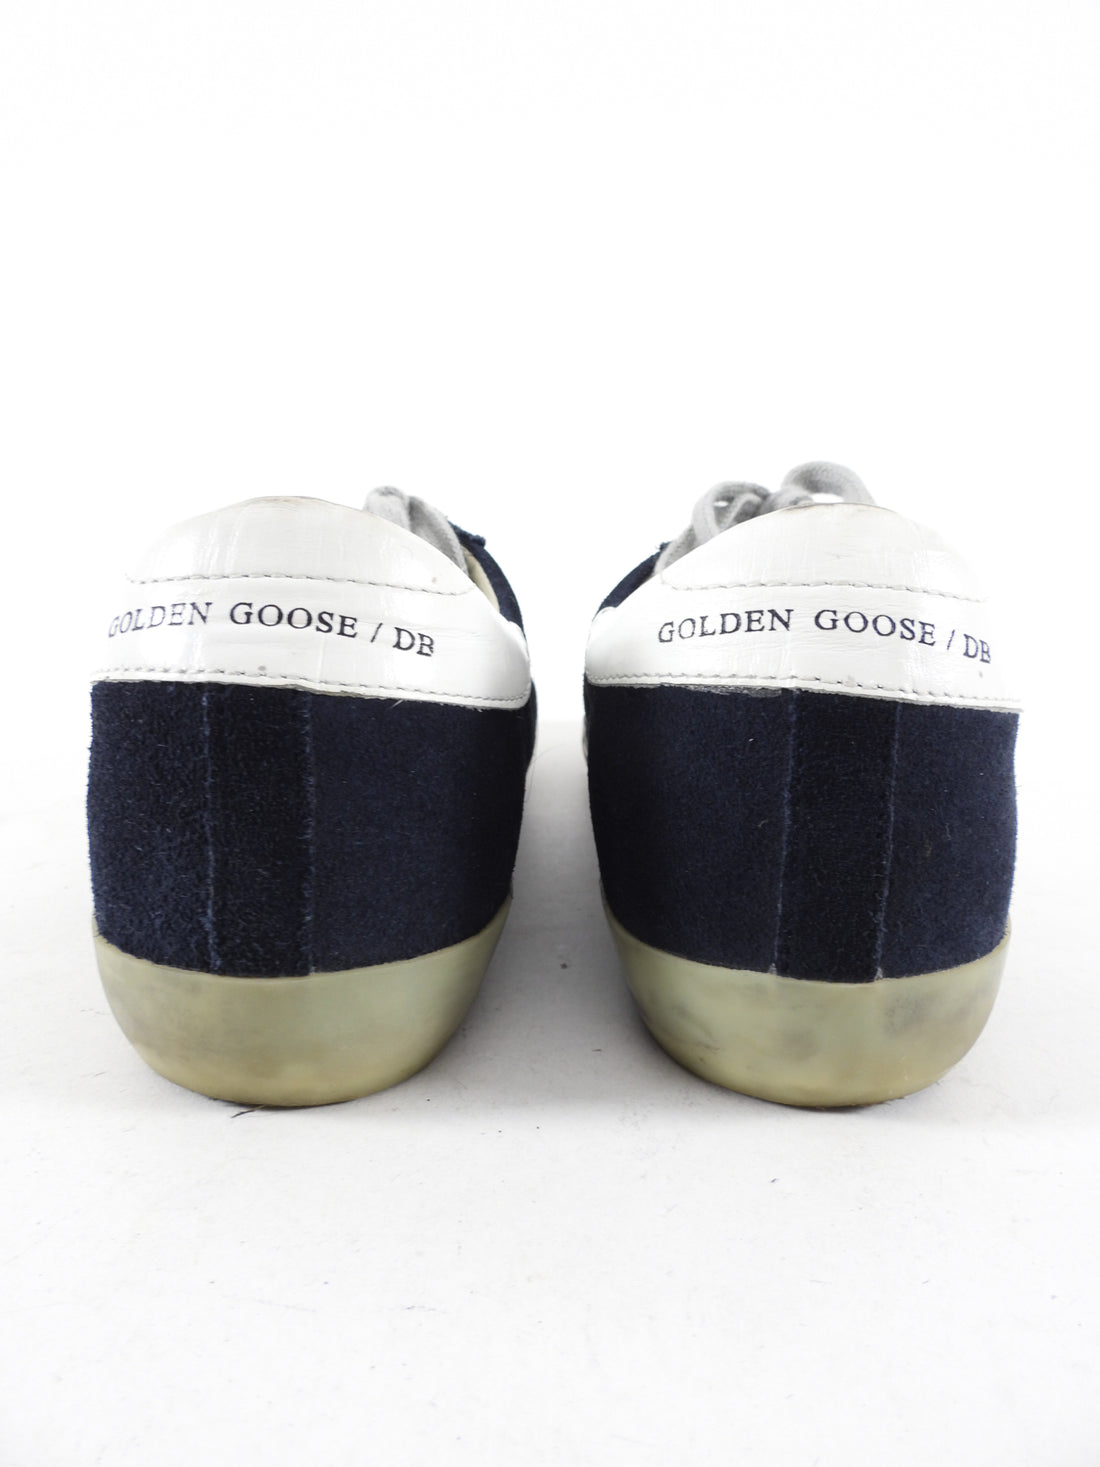 Golden Goose Superstar Midnight Navy Suede Sneakers - 37